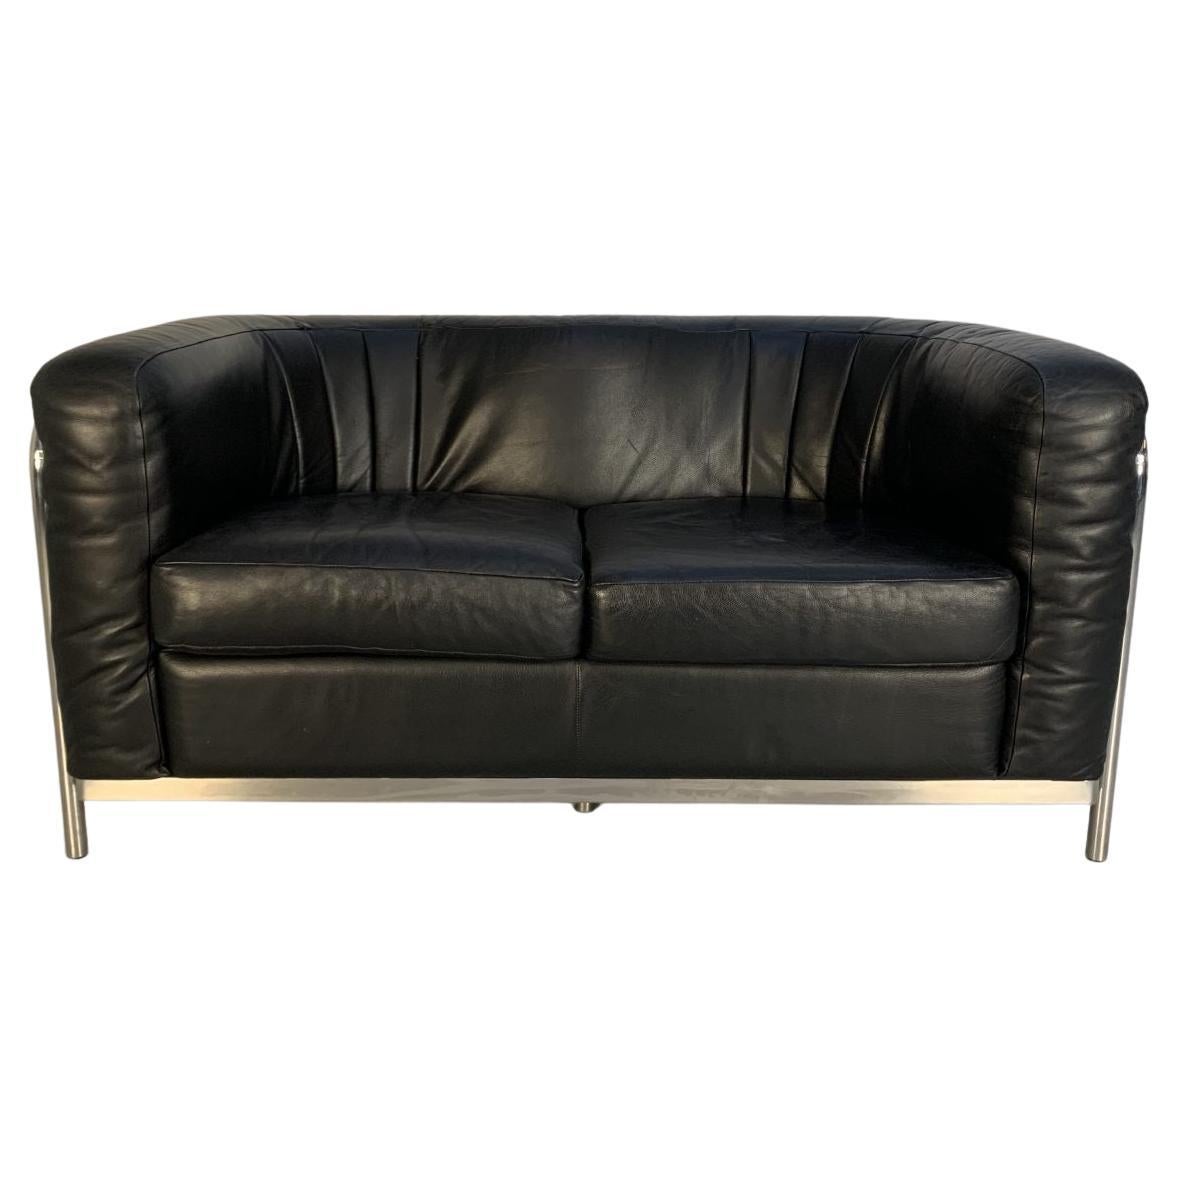 Zanotta “Onda” Sofa – 2-Seat – in Black “Scozia” Leather and Chrome For Sale